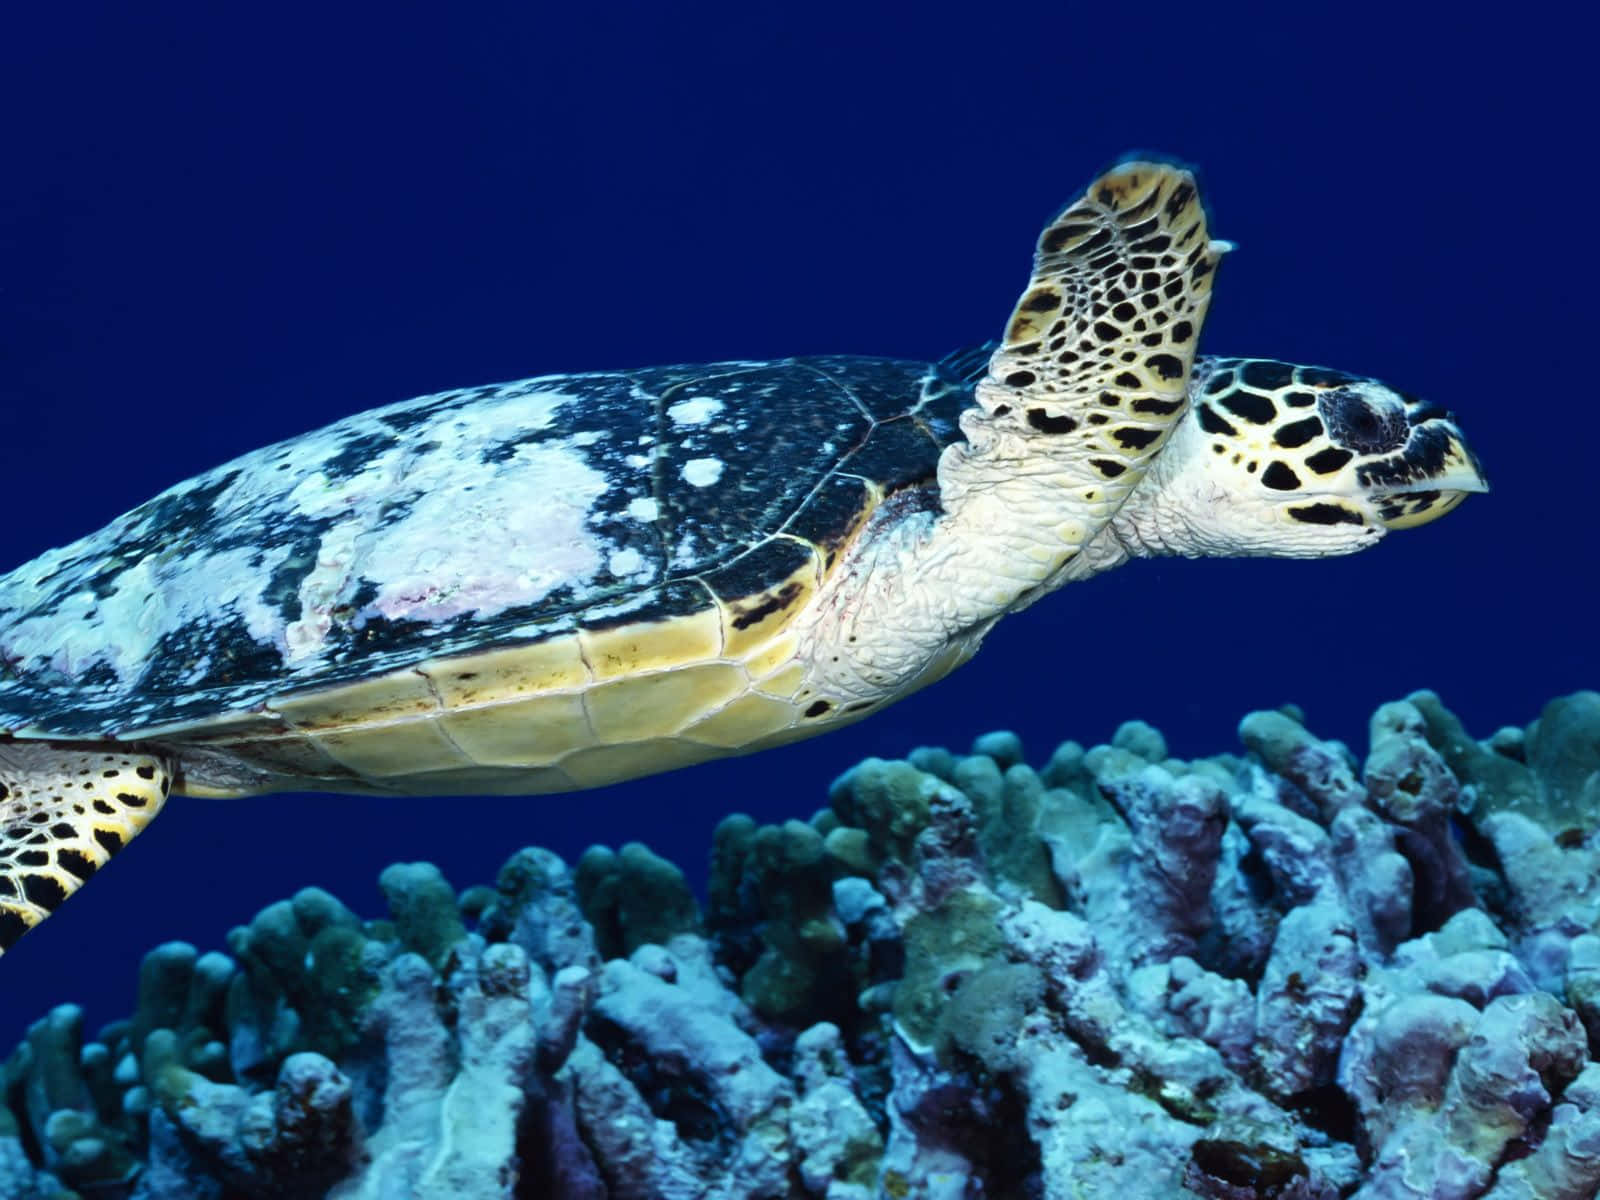 Eineschildkröte, Die Über Korallen Im Meer Schwimmt